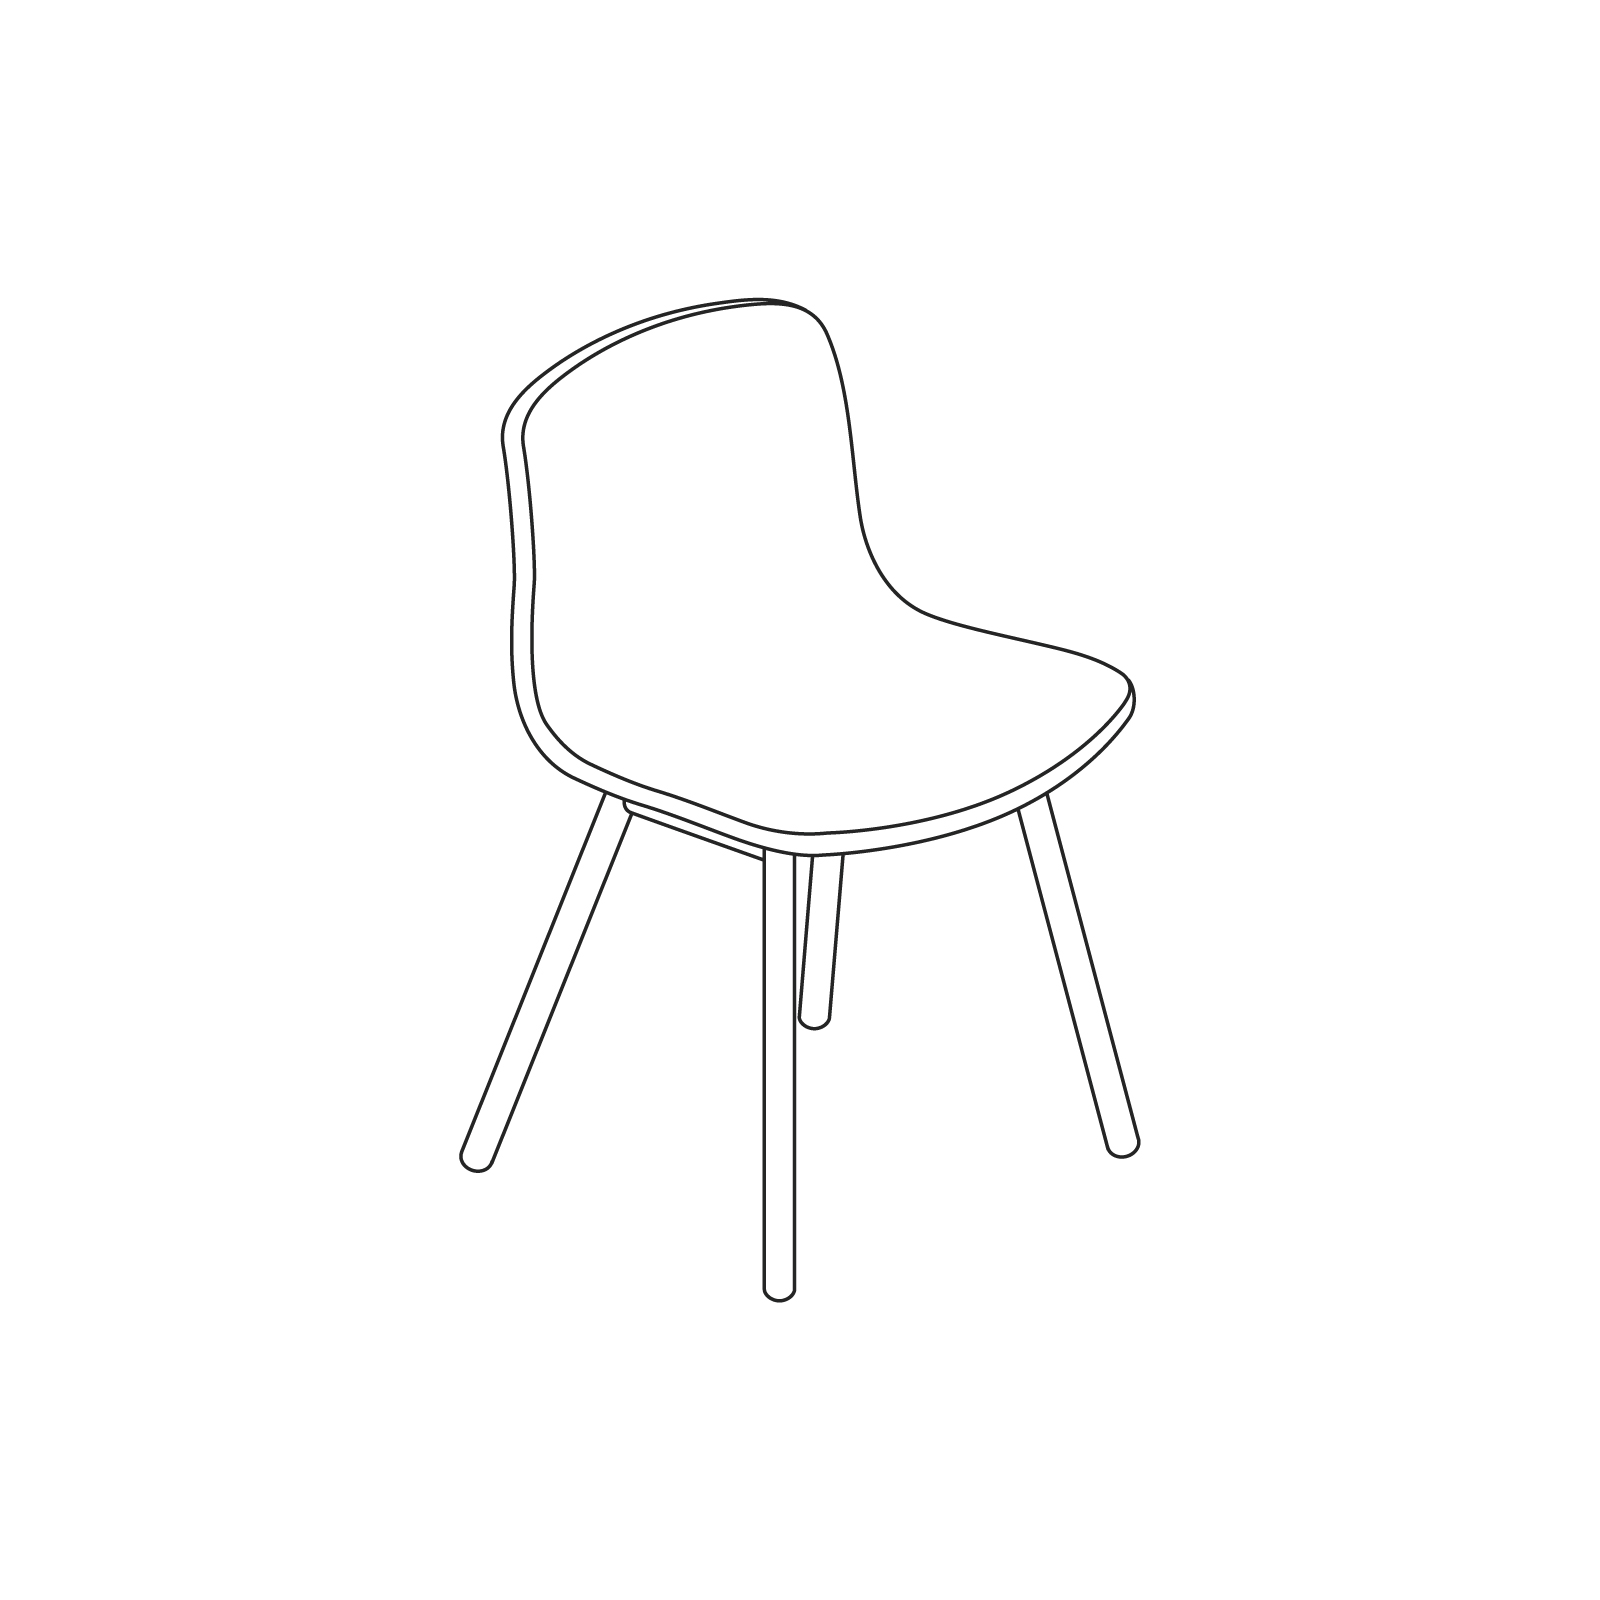 Um desenho de linha - About A Chair – Sem braços – Base de madeira maciça com 4 pernas (AAC12, AAC13)